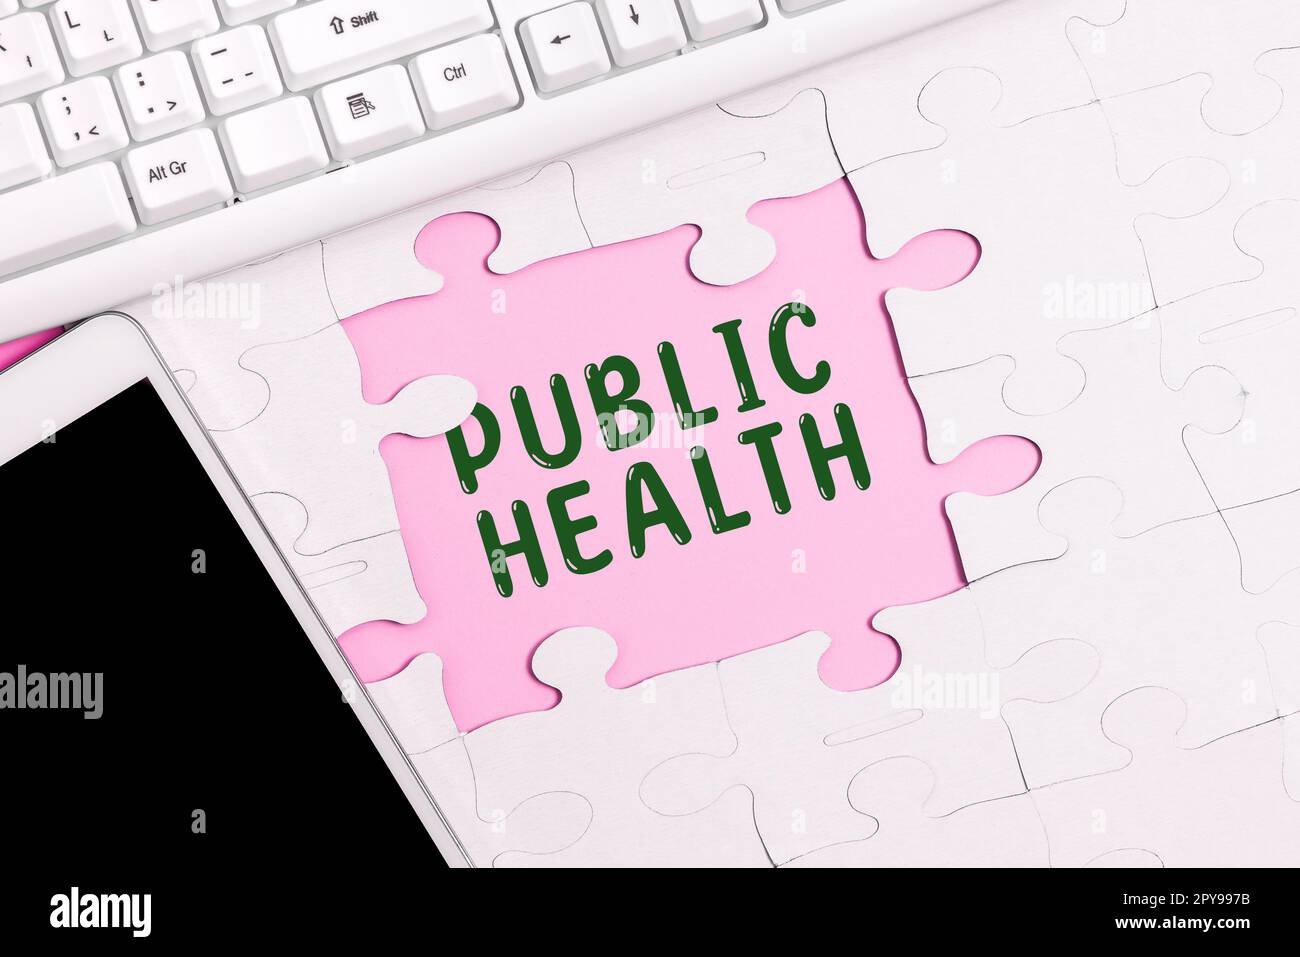 Handschriftliches Schild Public Health. Internetkonzept zur Förderung einer gesunden Lebensweise für die Gemeinschaft und ihre Menschen Stockfoto